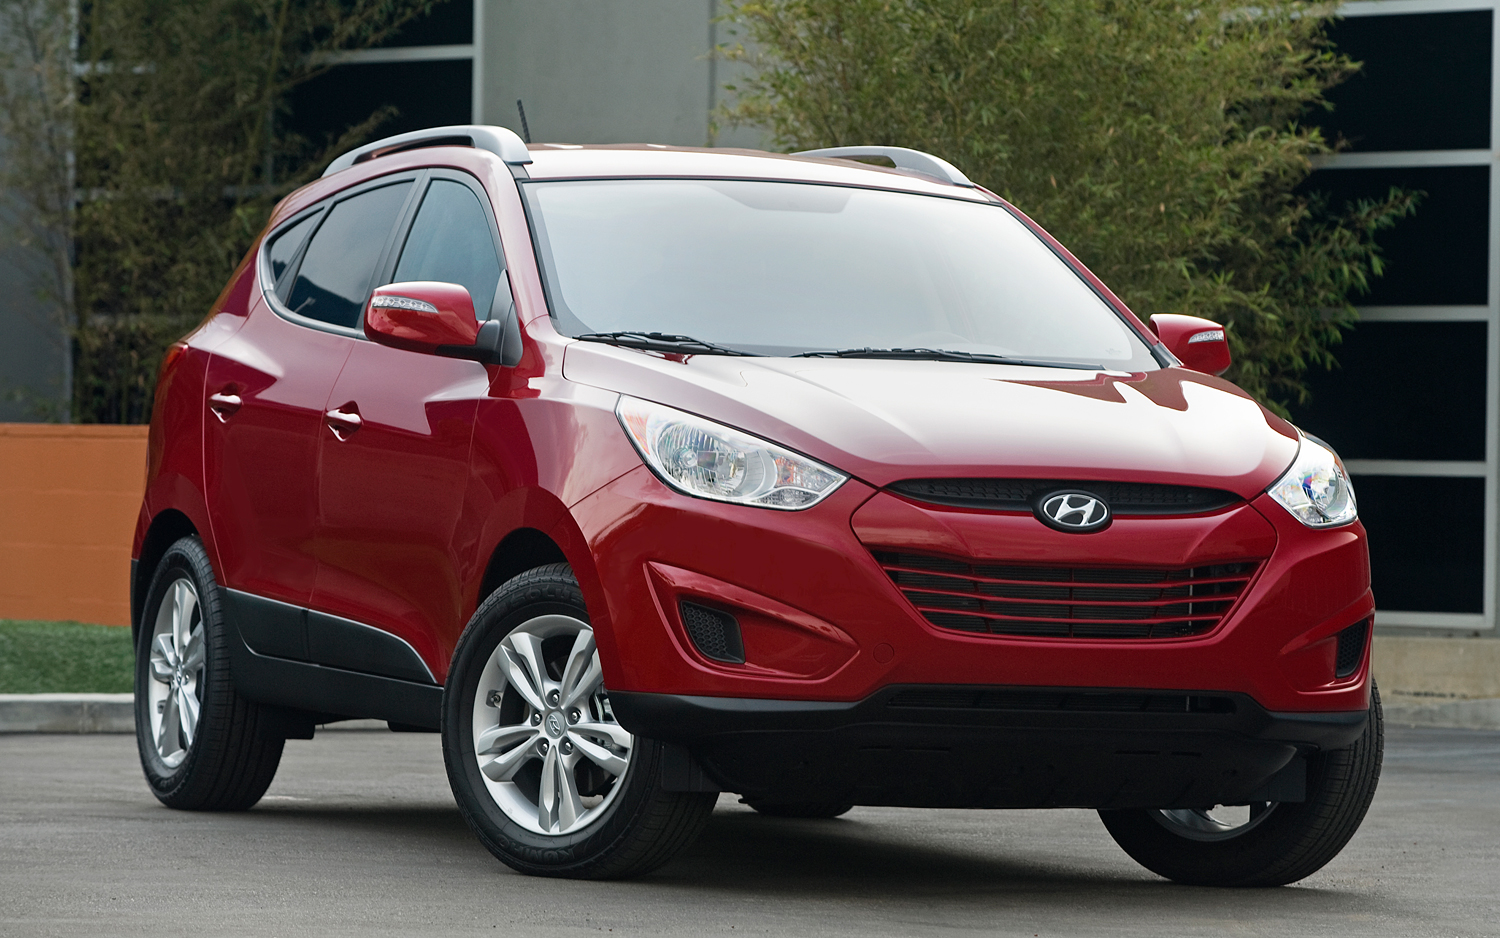 Đánh giá xe Hyundai Tucson 2012